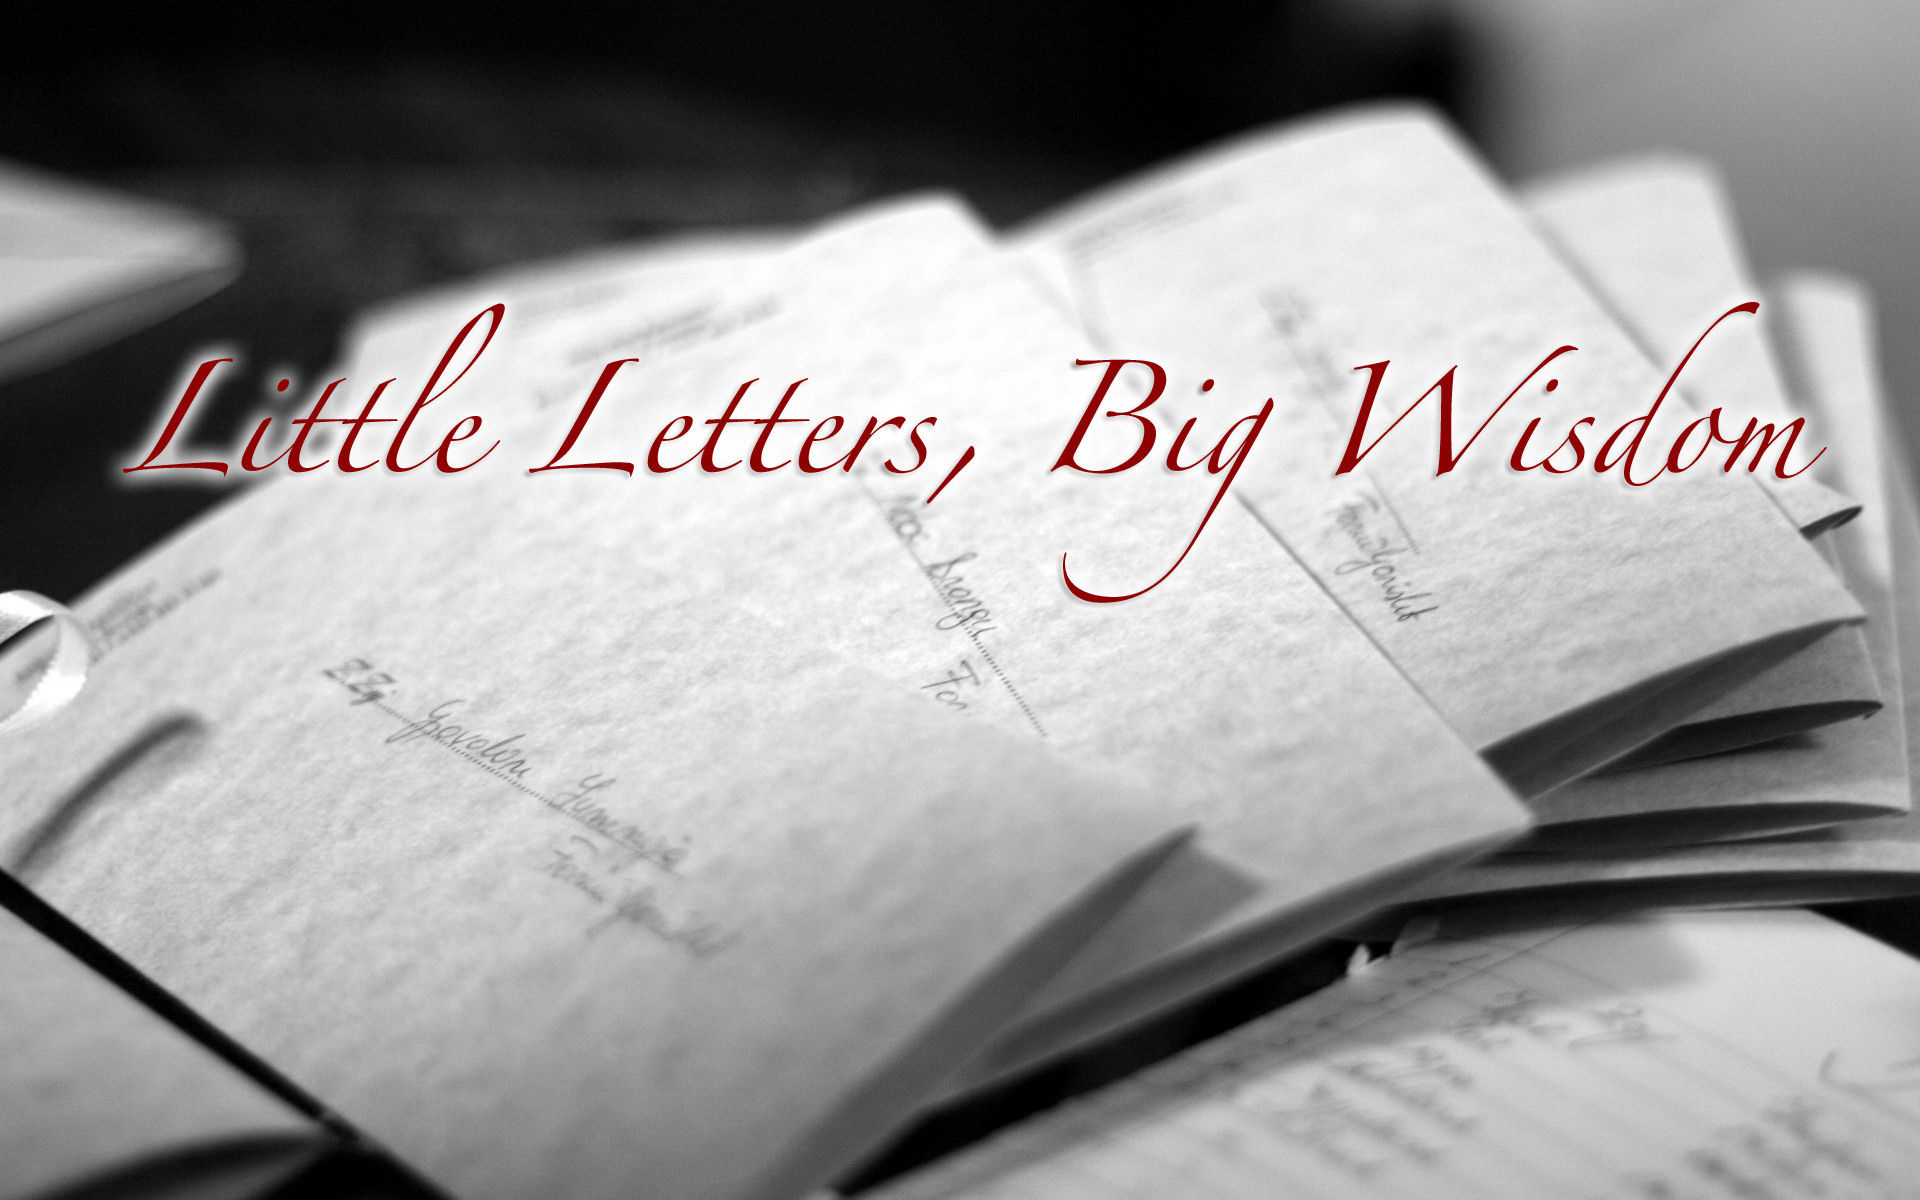 Little Letters, Big Wisdom